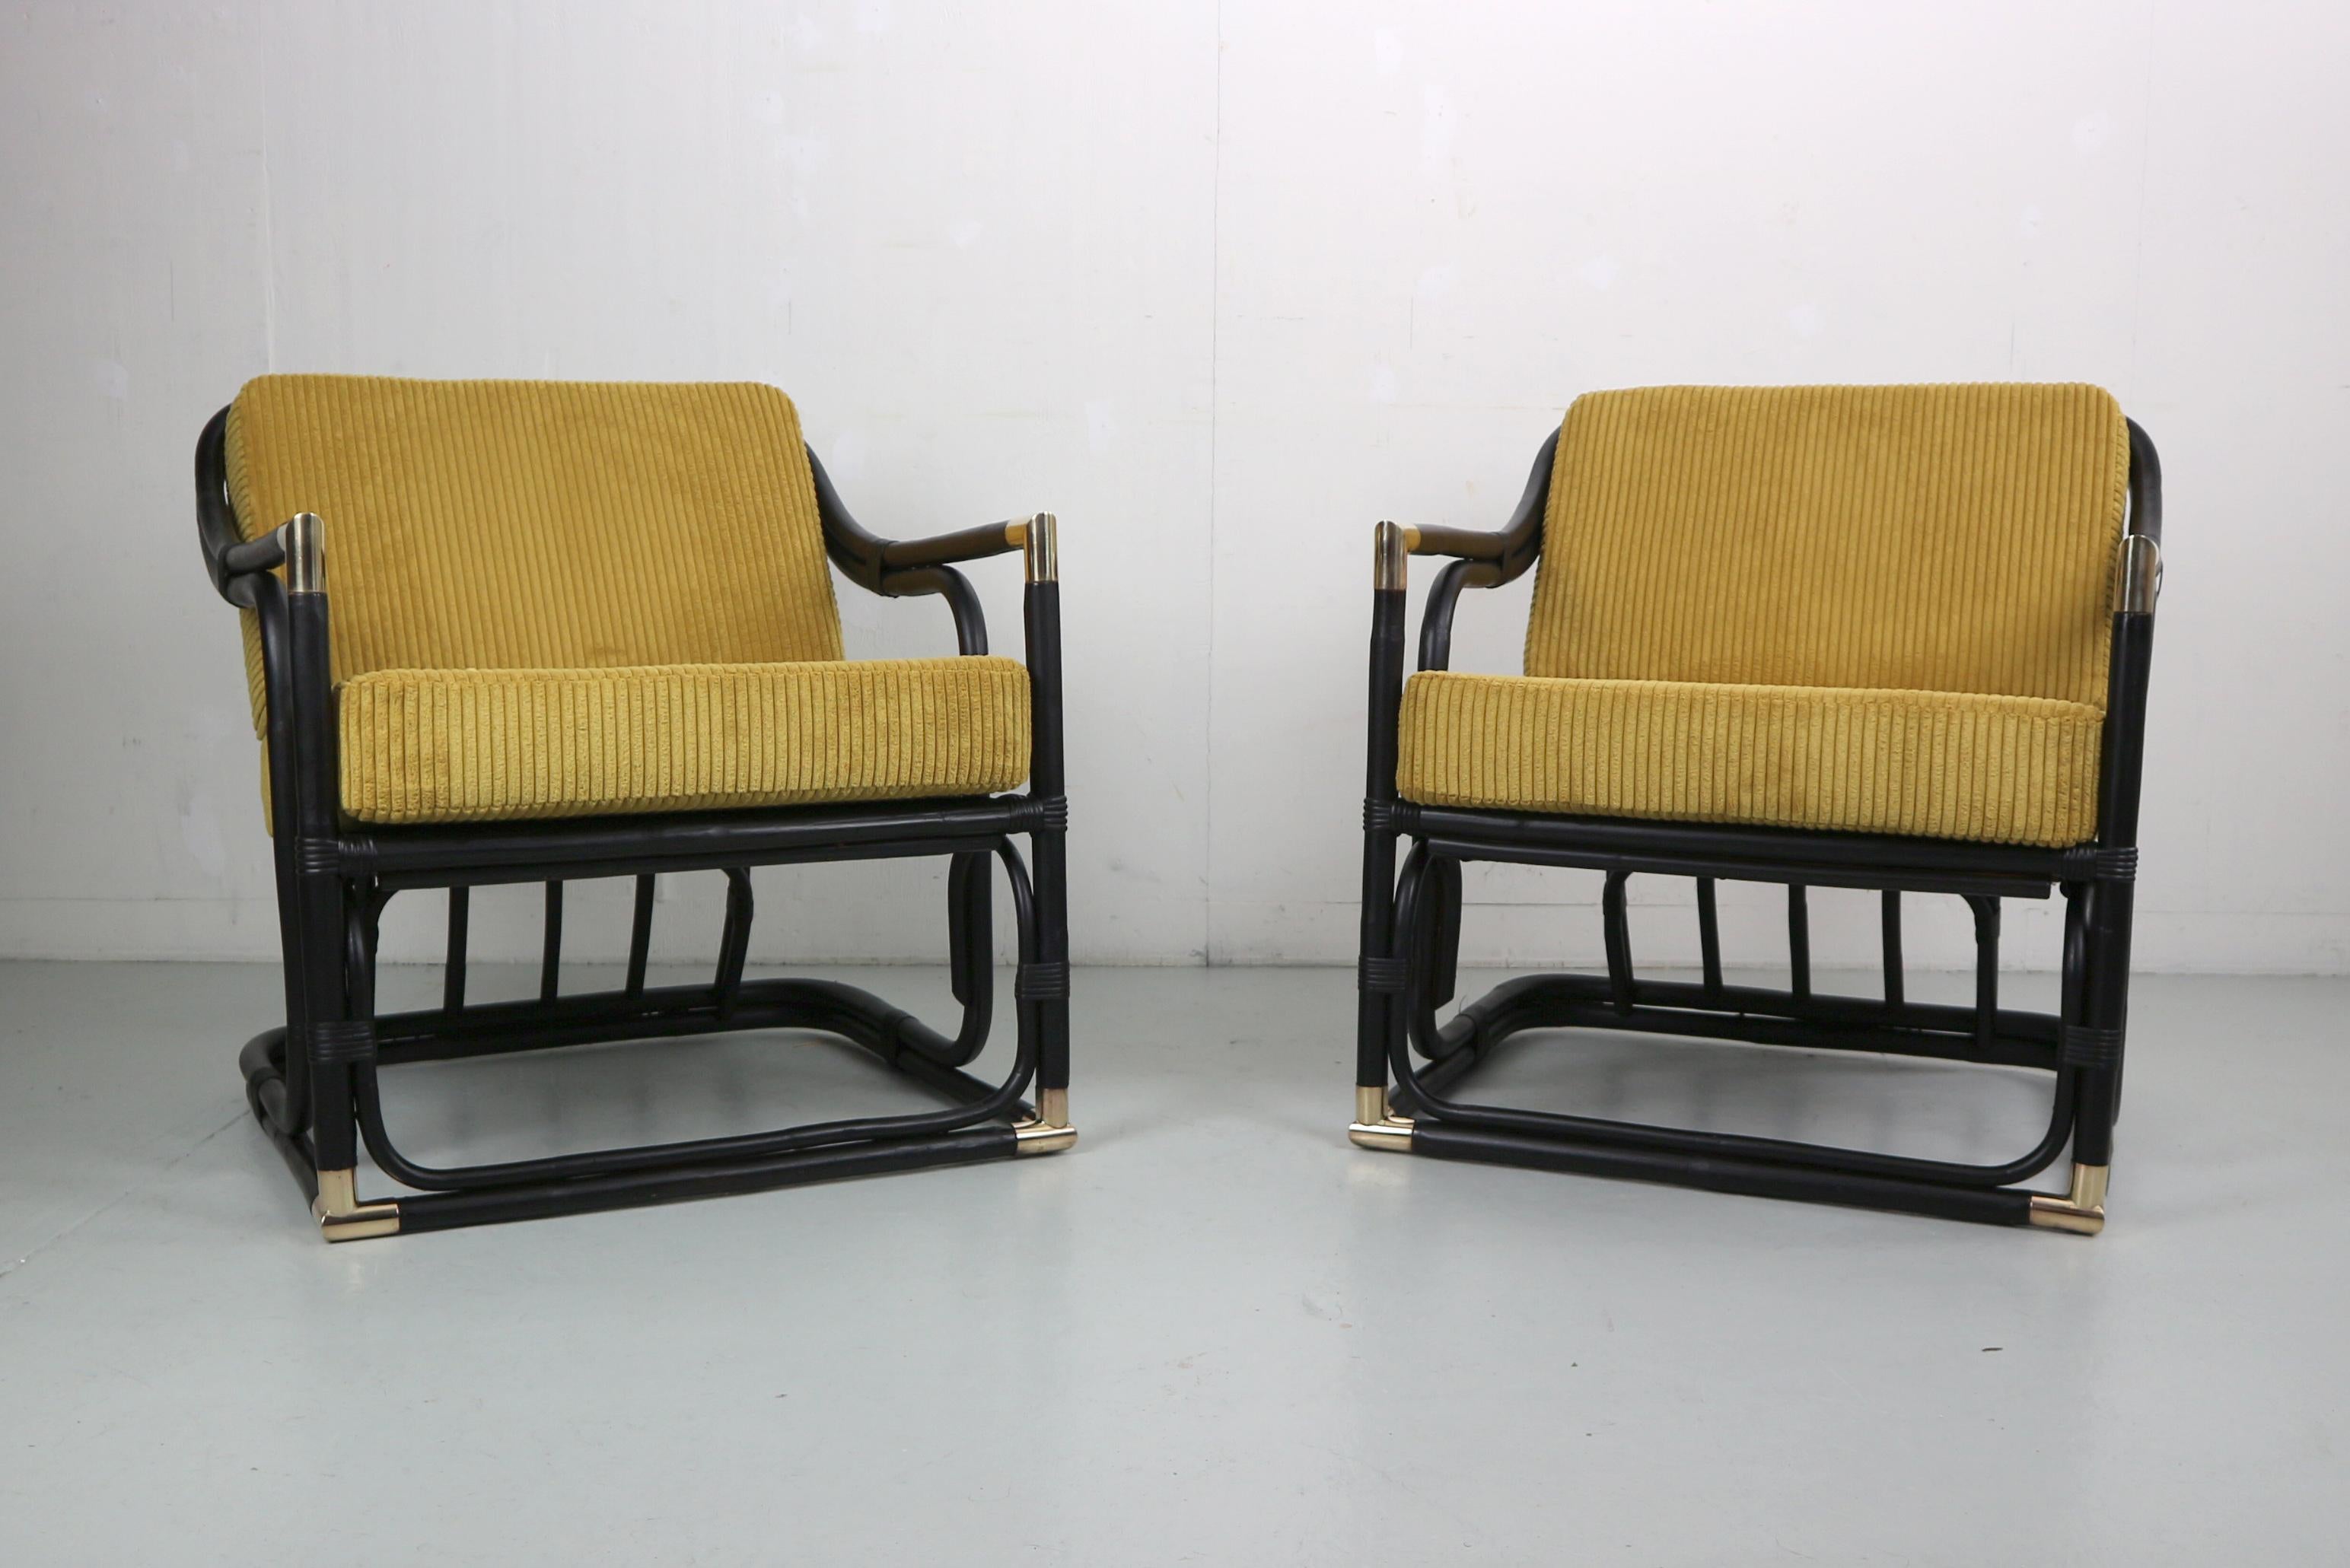 Une paire de chaises longues en bambou et en rotin du début du 20e siècle absolument magnifiques Dans cette annonce, vous trouverez une paire de chaises longues en bambou et en rotin du début du 20e siècle absolument magnifiques. Leur design